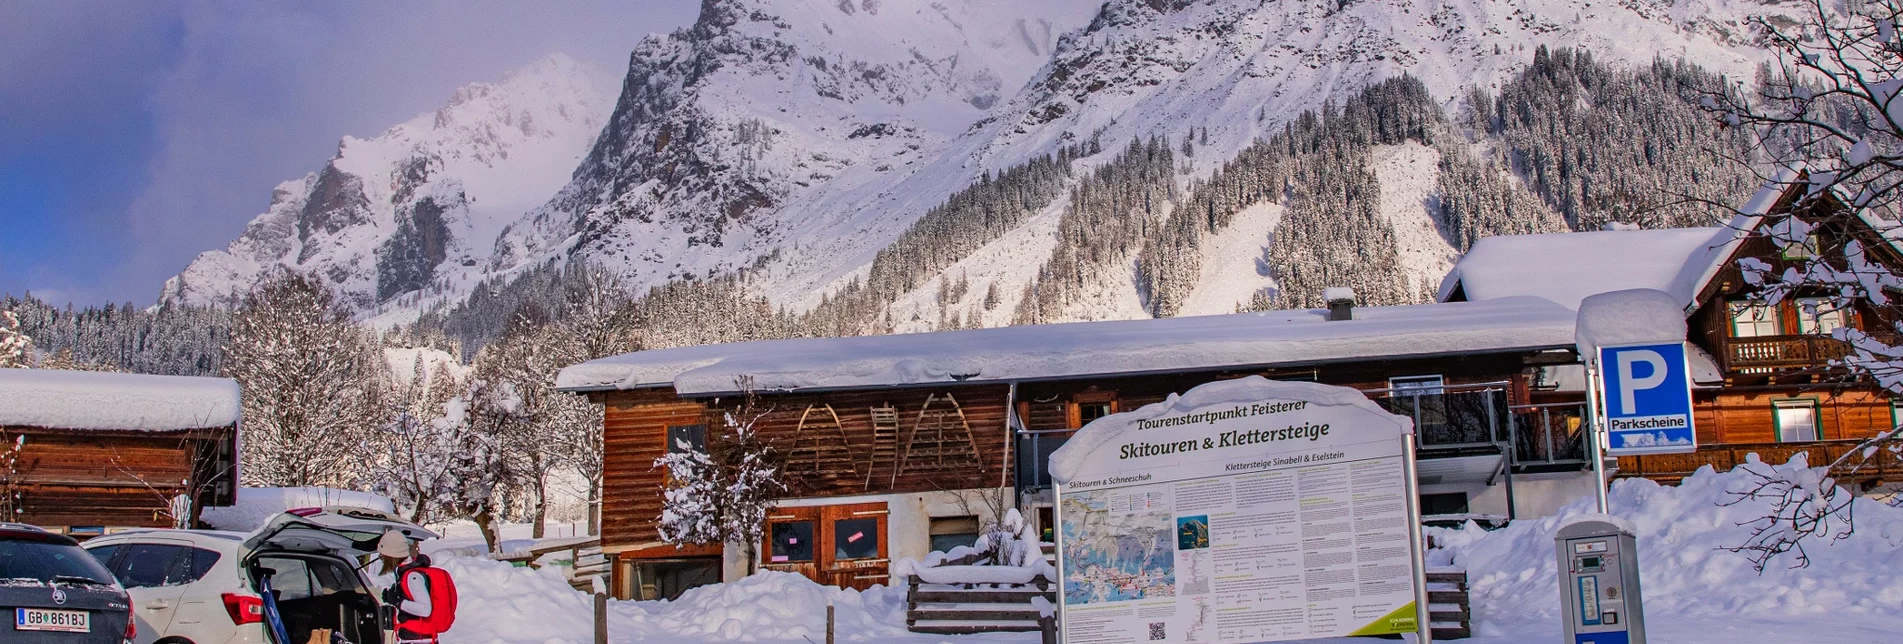 Skitour Scheichenspitze - hochalpine Skitour - Touren-Impression #1 | © Erlebnisregion Schladming-Dachstein